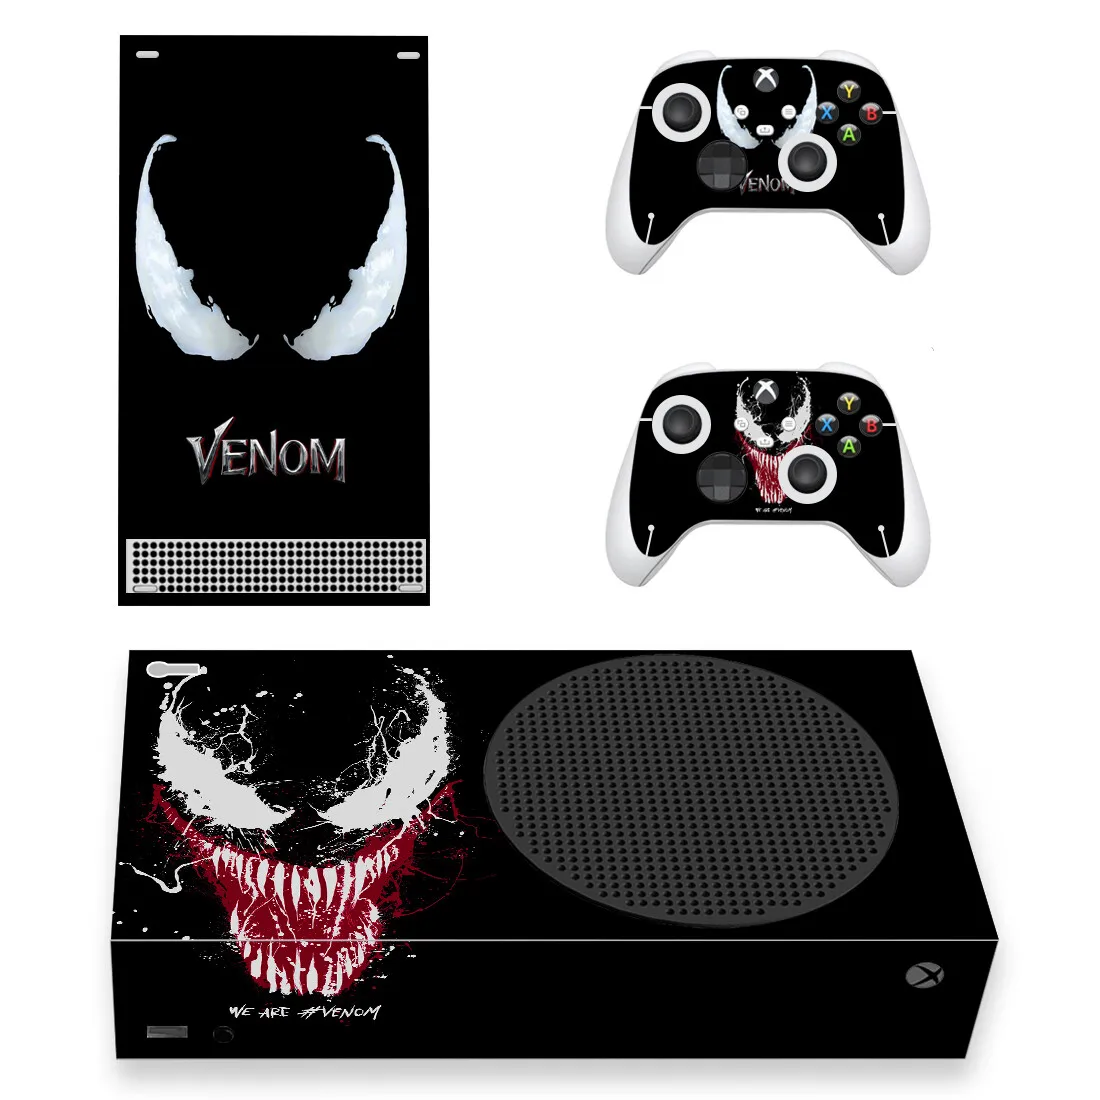 

Пленка Venom, наклейка, наклейка, Обложка для консоли Xbox серии S и 2 контроллера серии Xbox, тонкая виниловая наклейка